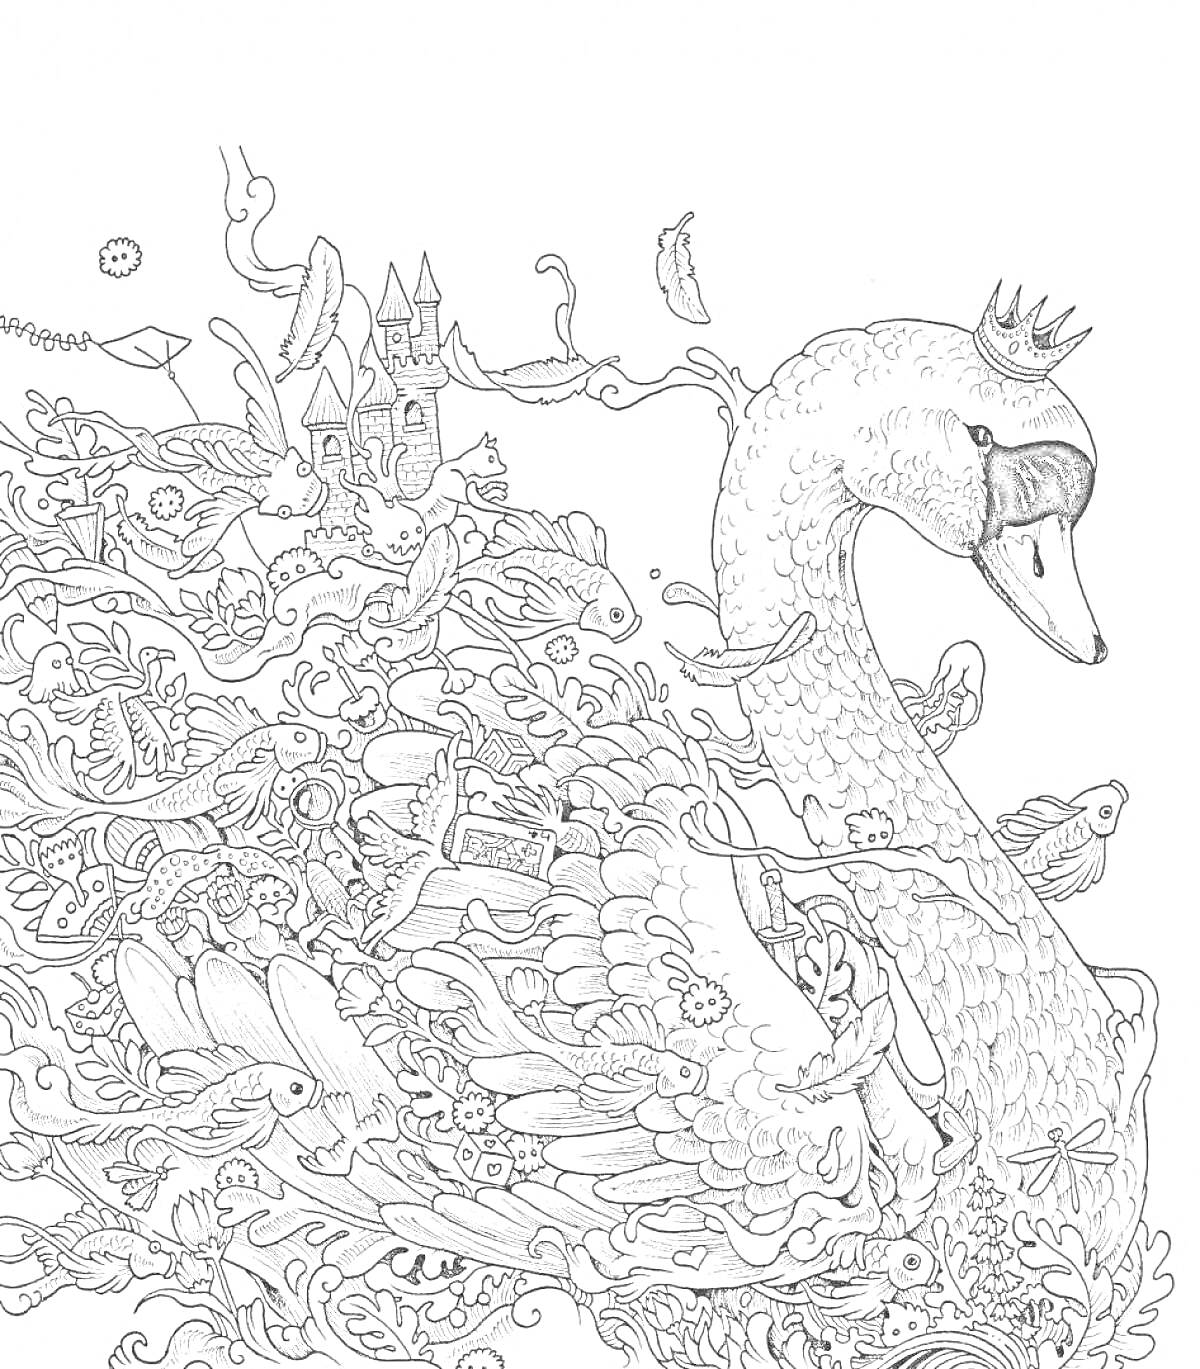 Раскраска лебедь с короной среди фантастических существ и замка